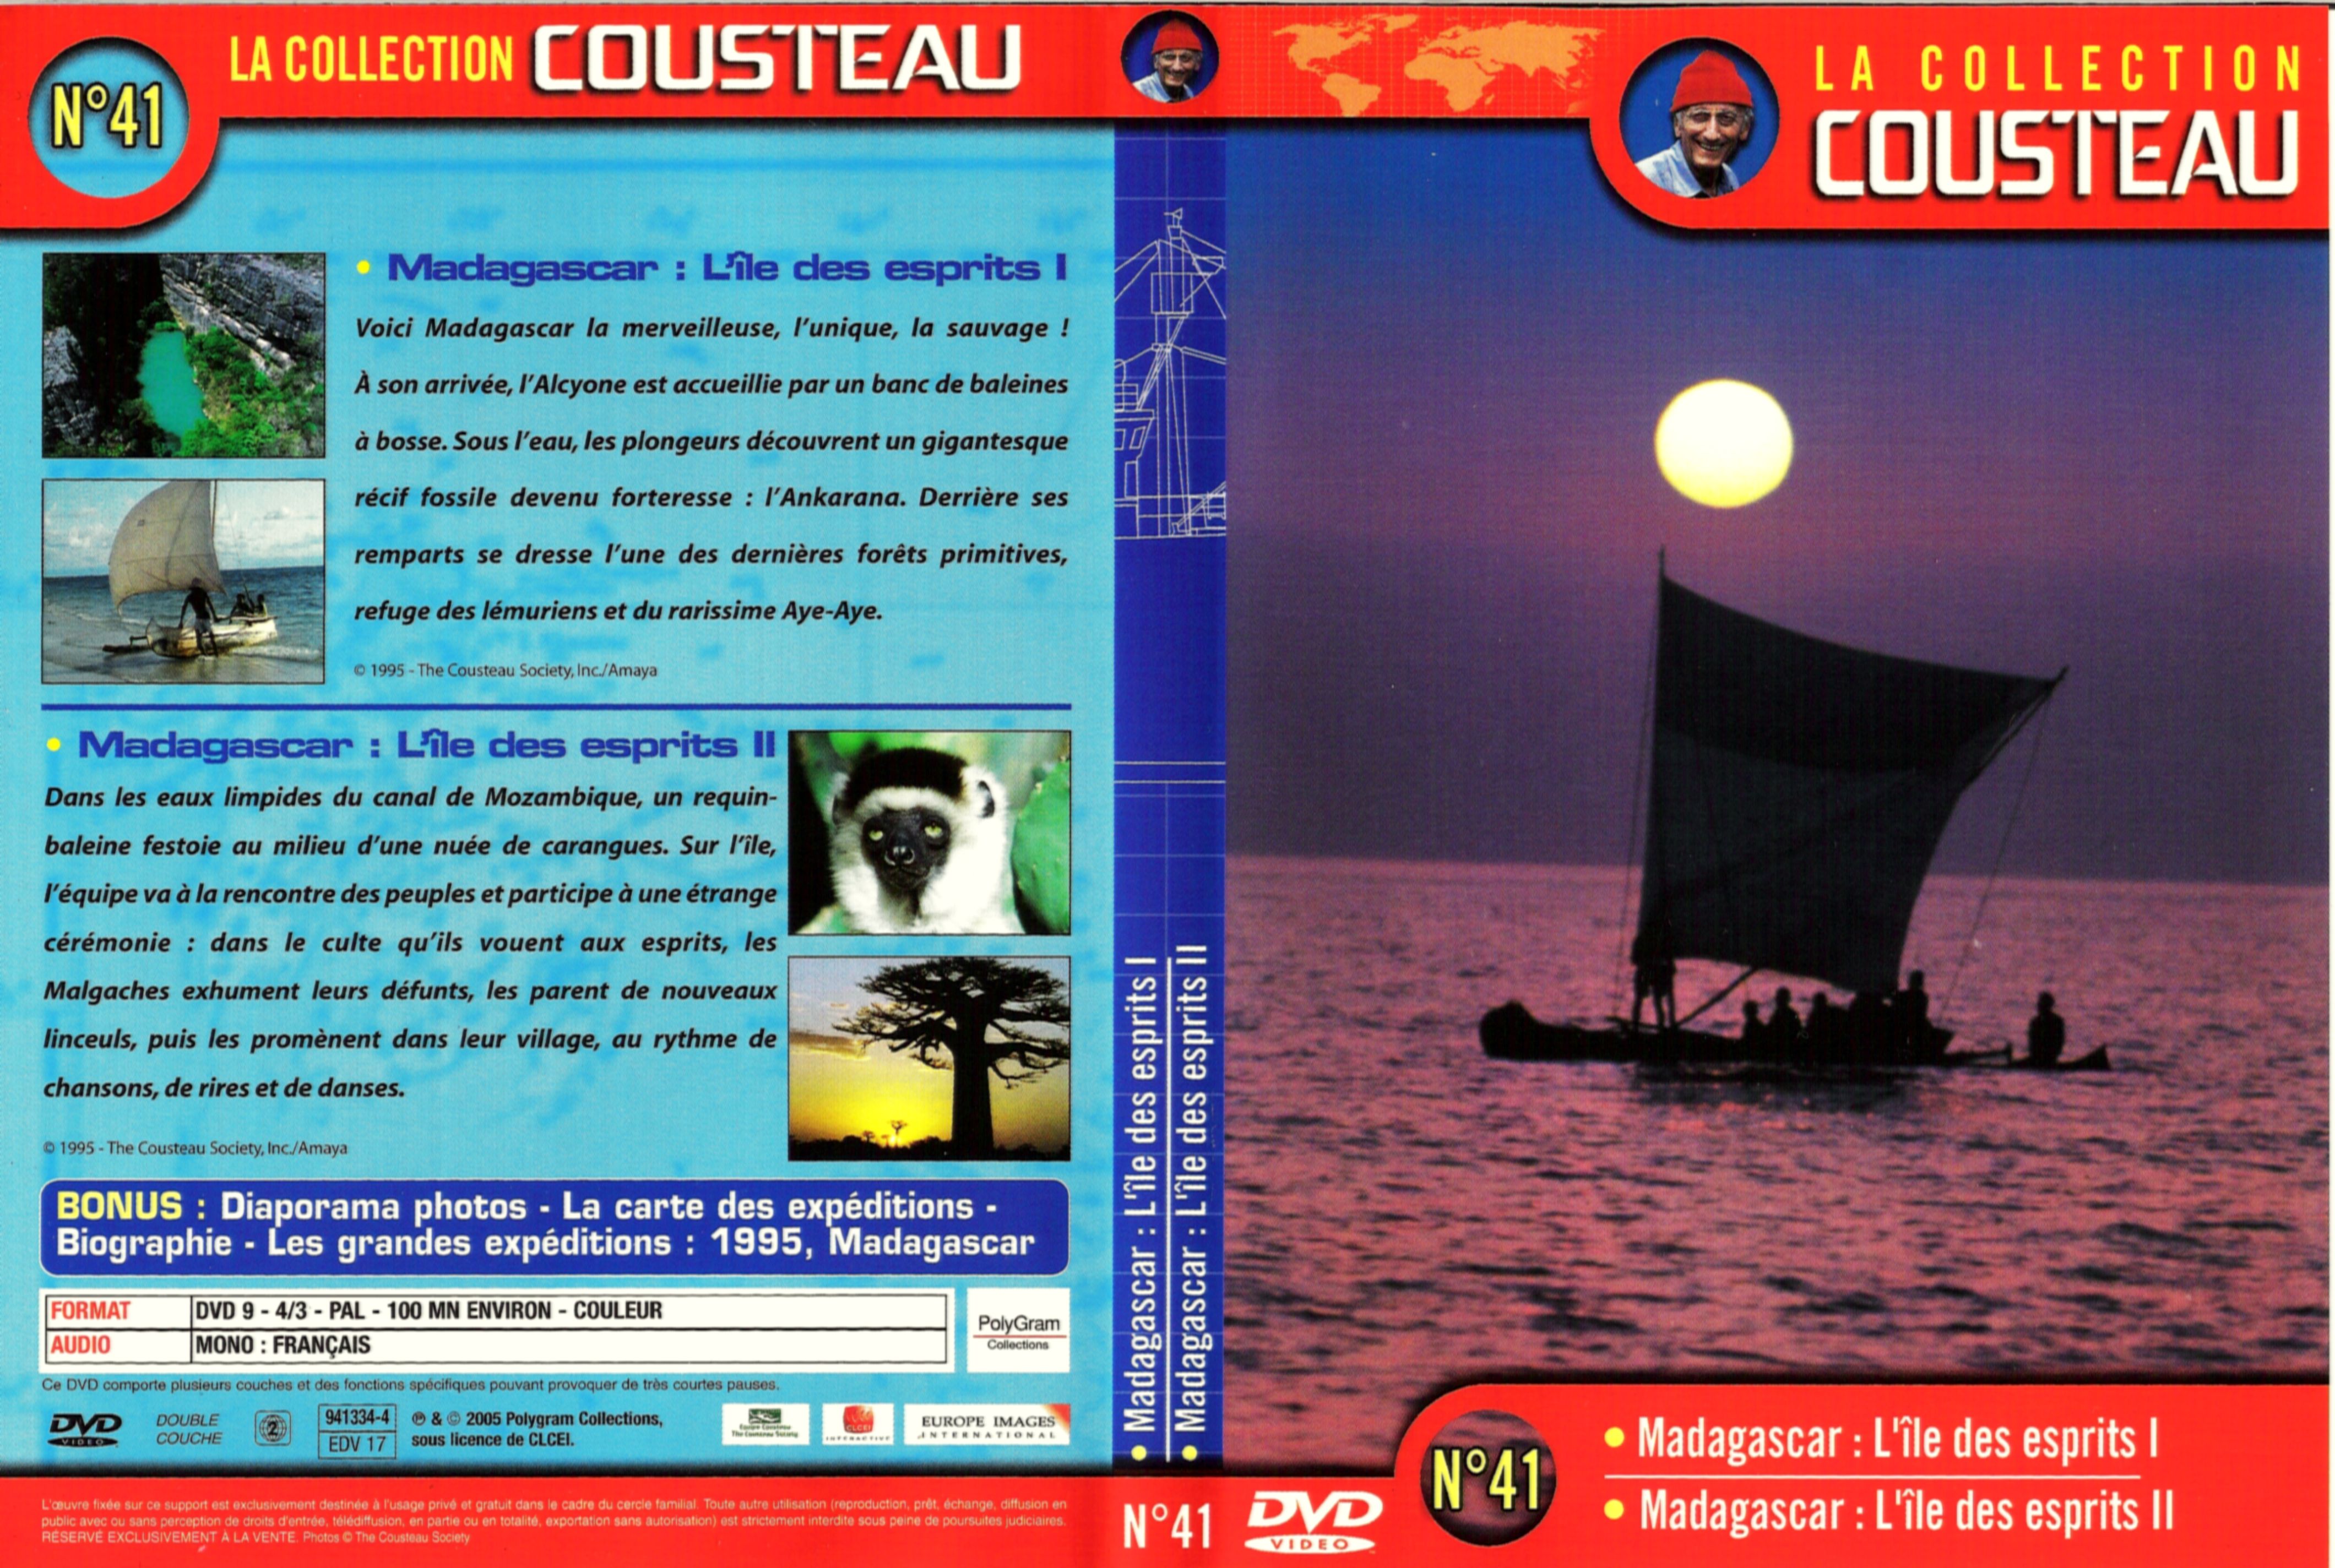 Jaquette DVD Cousteau Collection vol 41